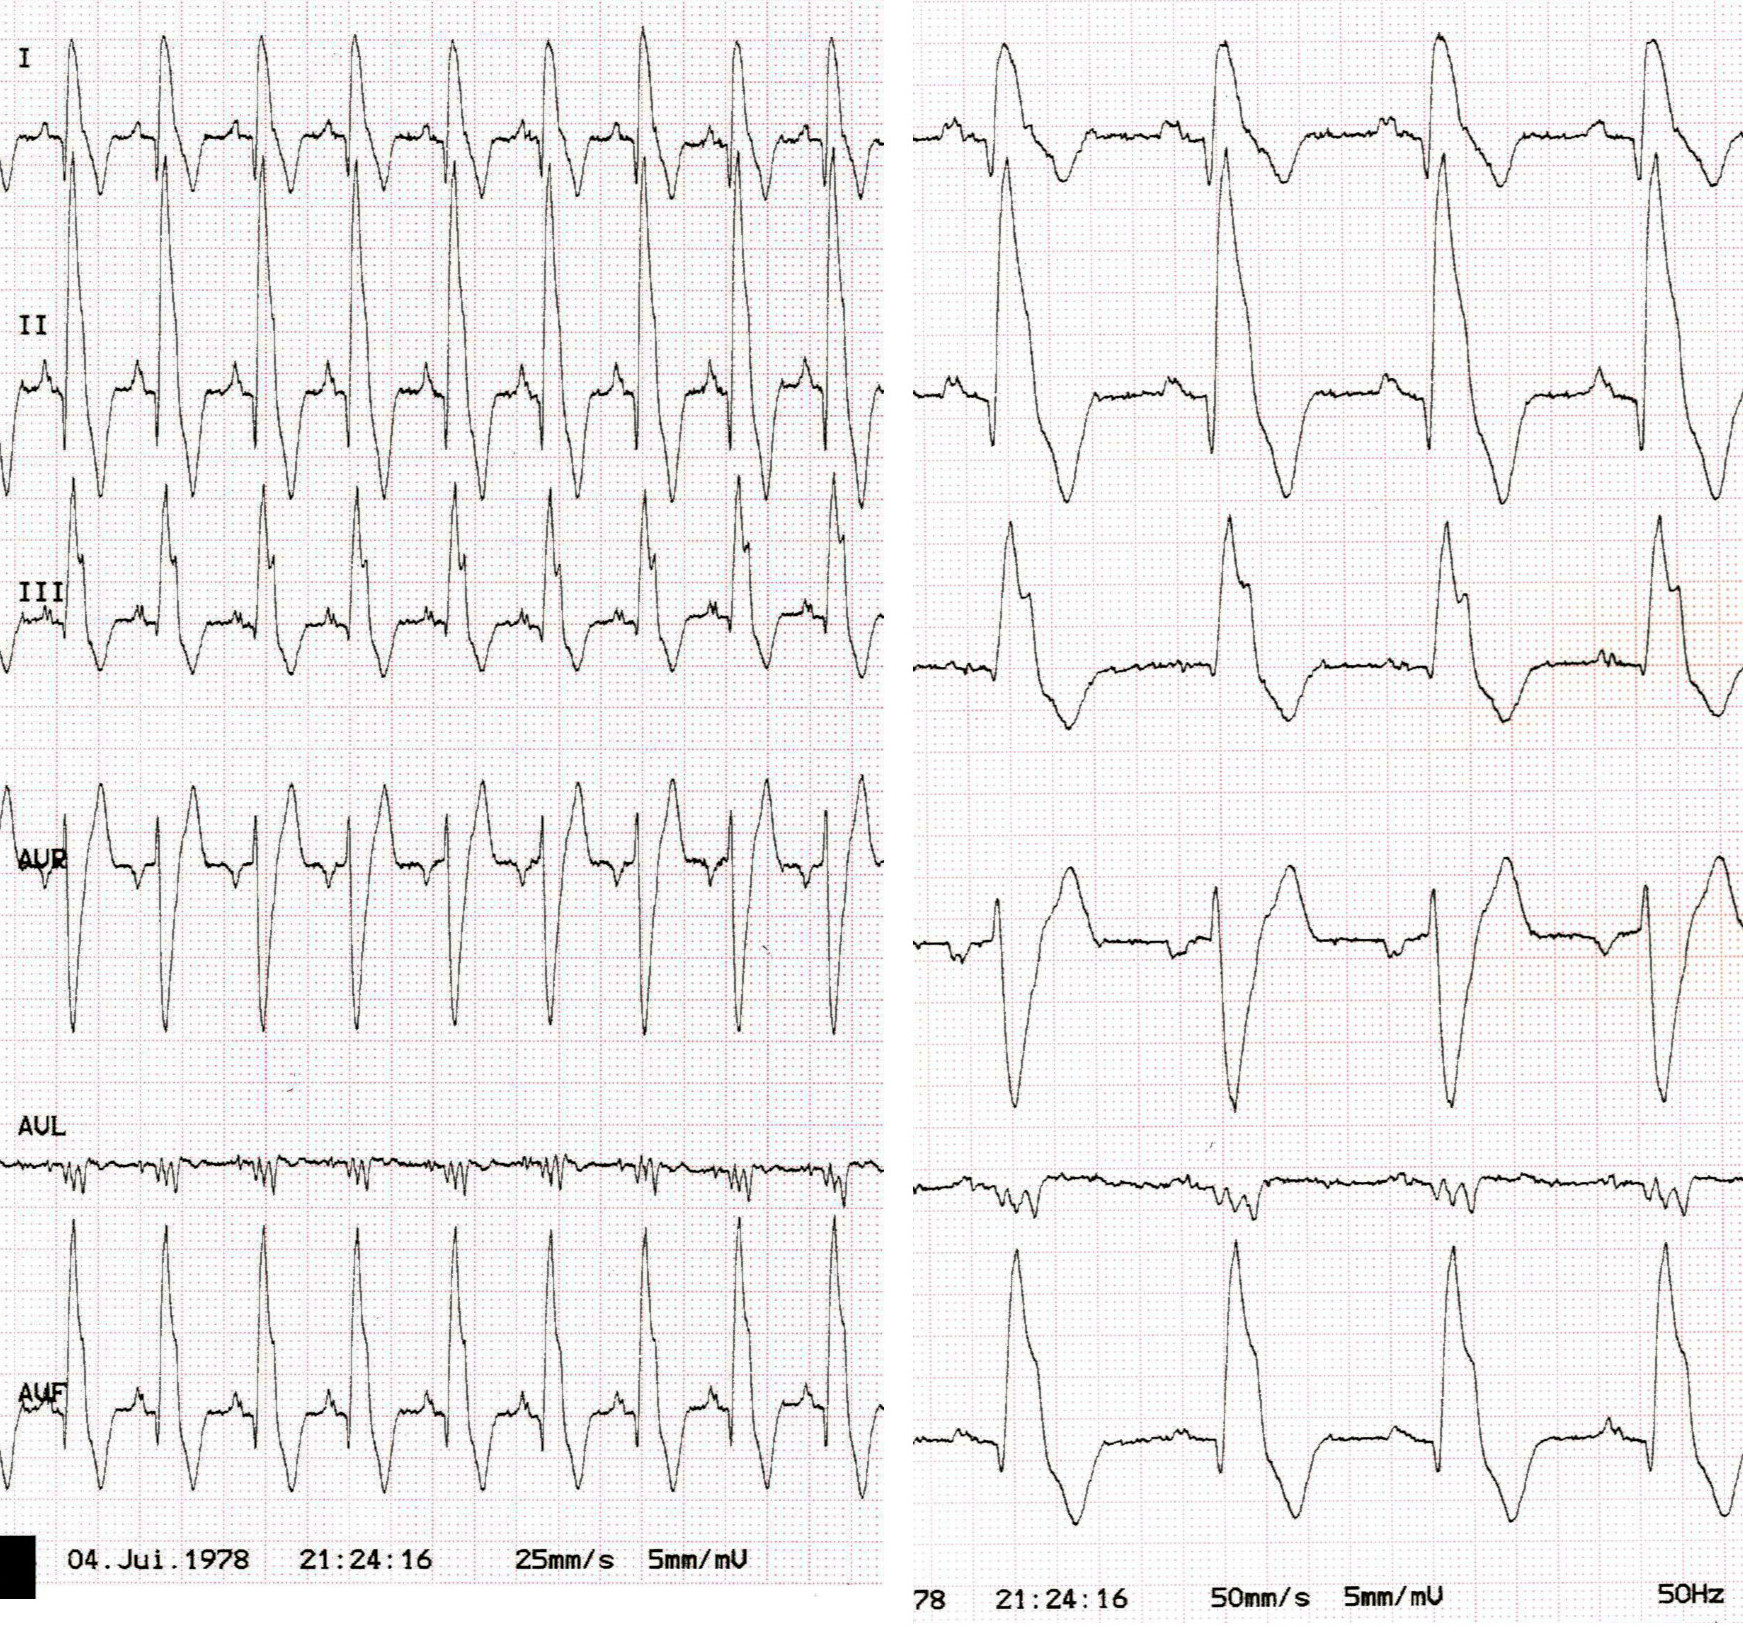  QRS hypervoltés de morphologie RR' et ondes P élargies dans une cardiomyopathie dilatée.